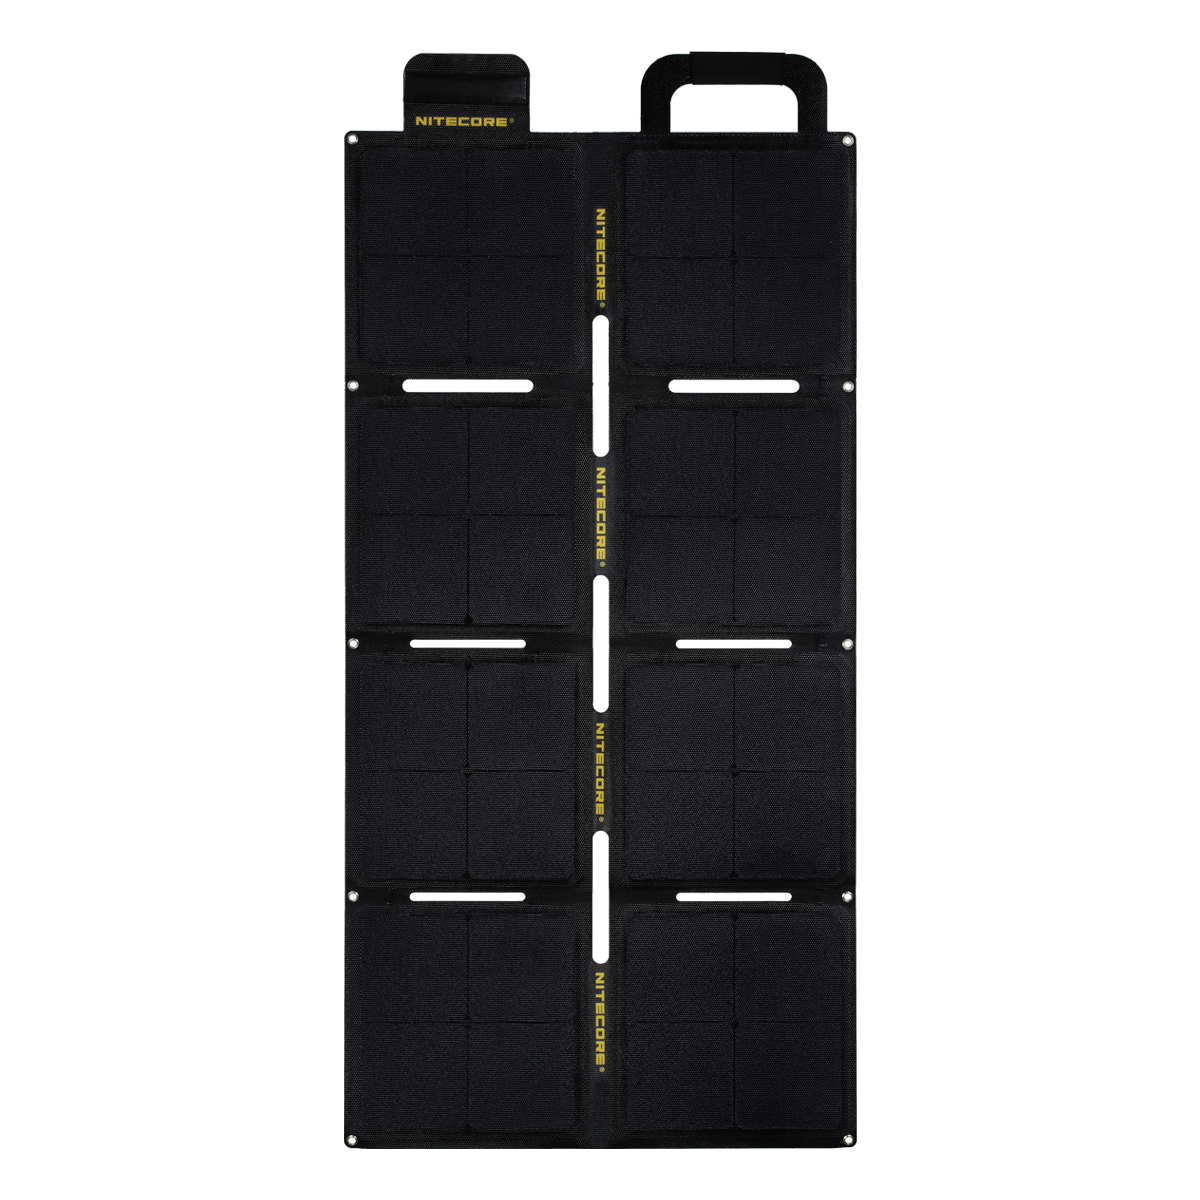 لوح شمسي قابل للطي NITECORE FSP100W ETFE 100W مقاوم للماء IPX5 ومخرج 5.6A و 18V لأجهزة الخلايا الشمسية والطاقة الشمسية في التخييم والسفر.